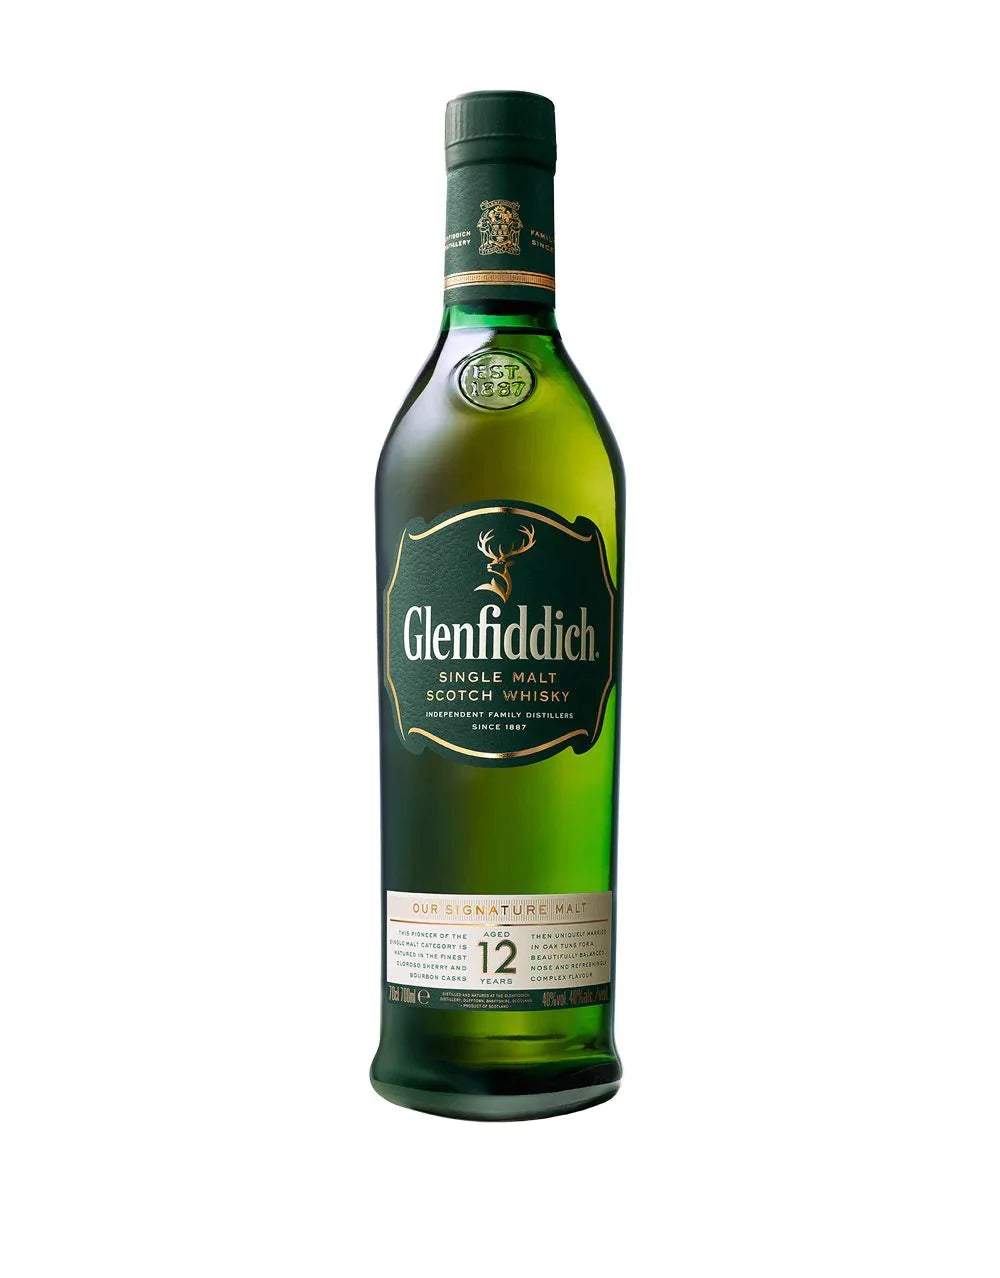 Glenfiddich Special Edition 12 Year Old Sherry Cask Finish Speyside Single  Malt Scotch 750ml